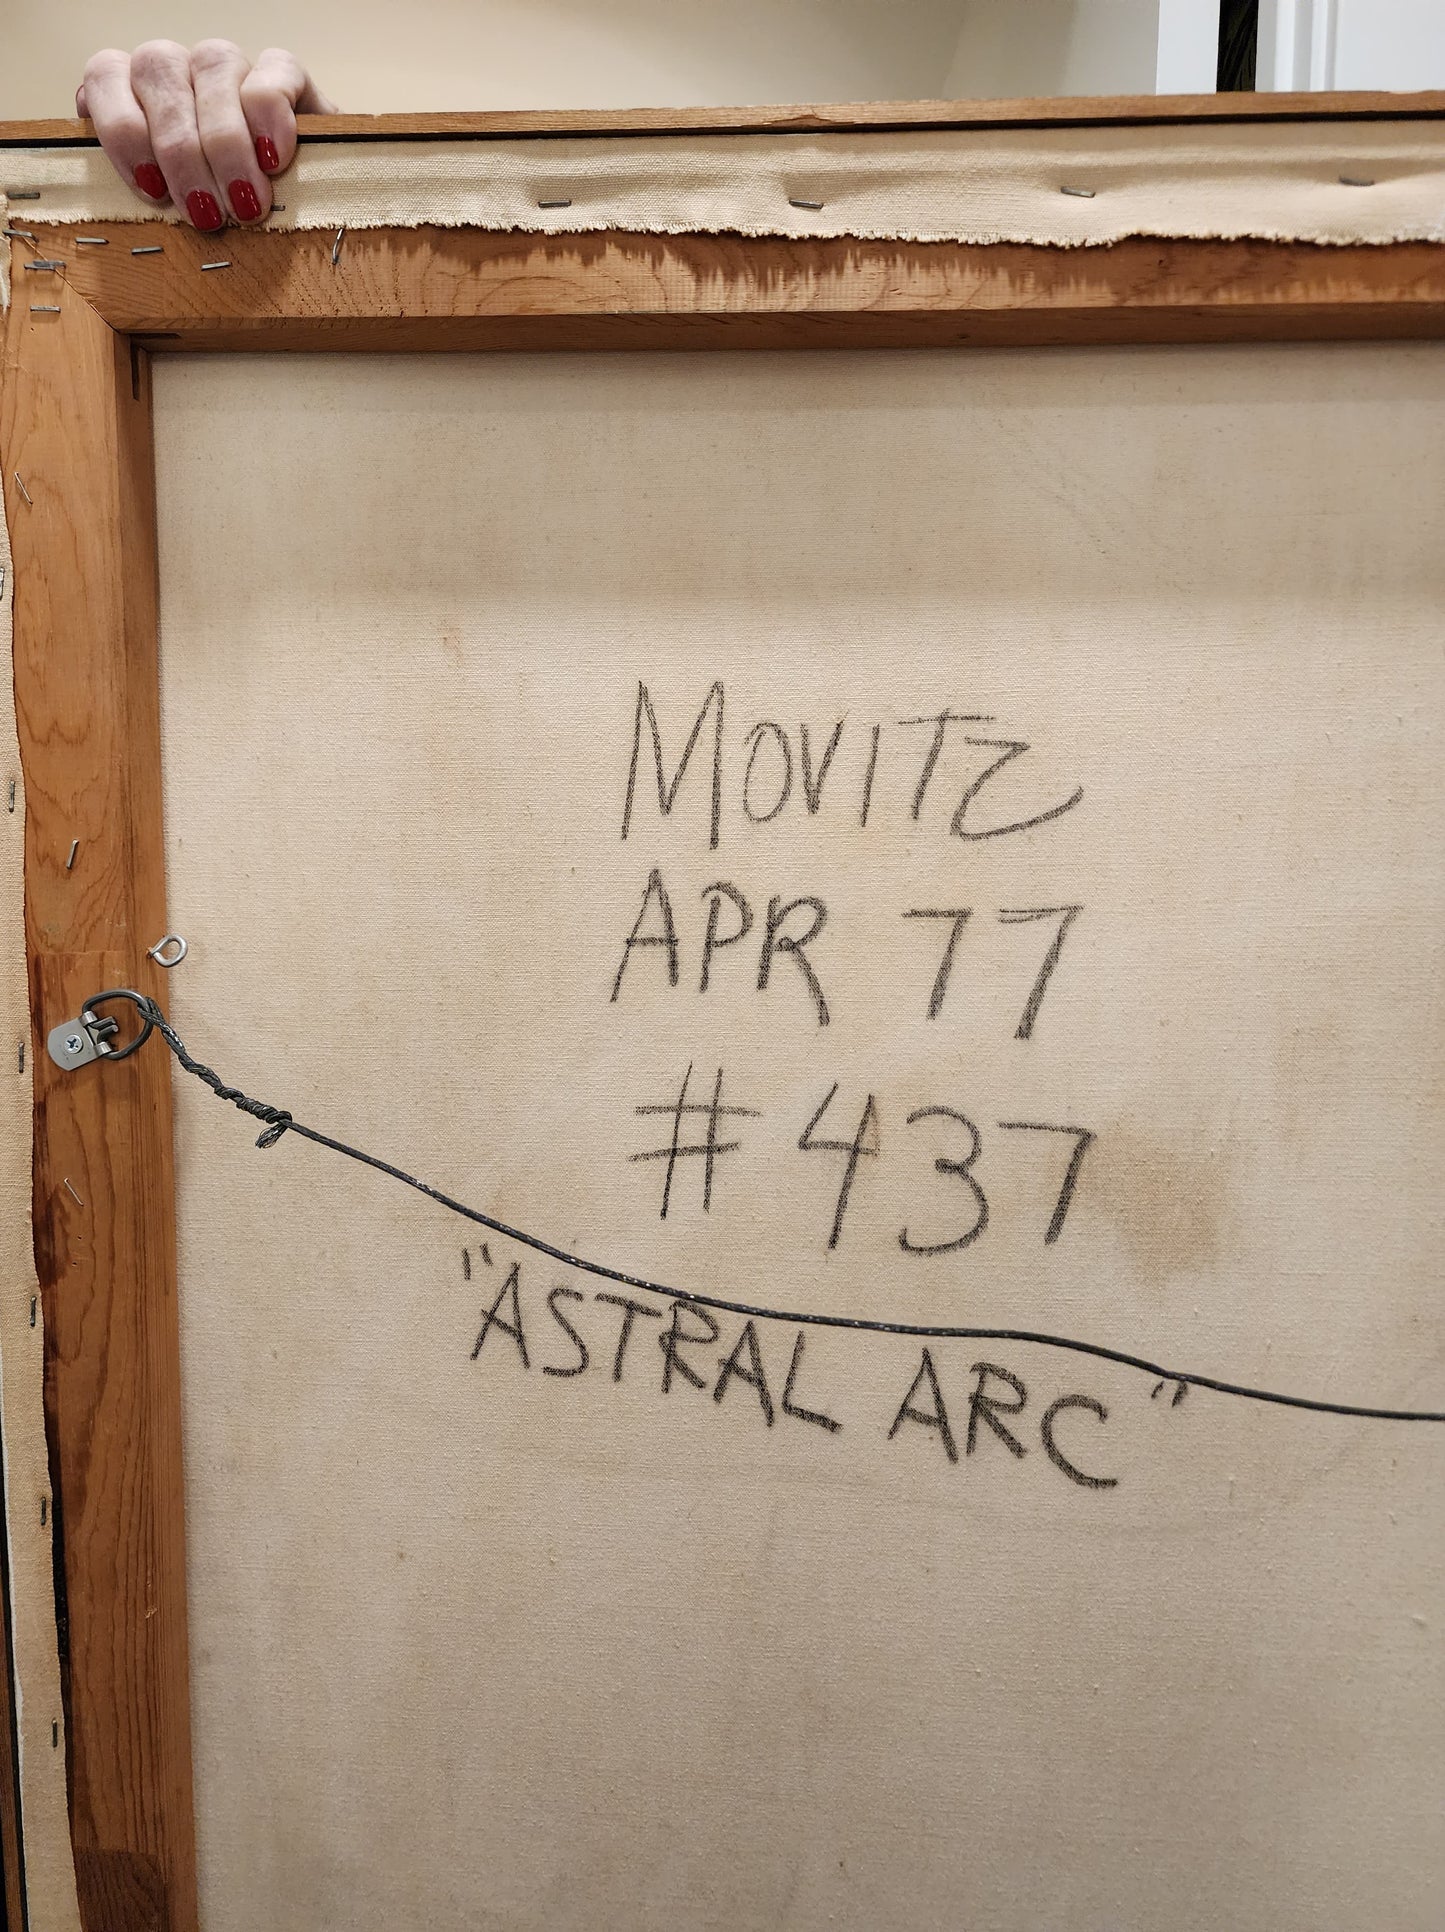 ASTRAL ARC by Edward Movitz